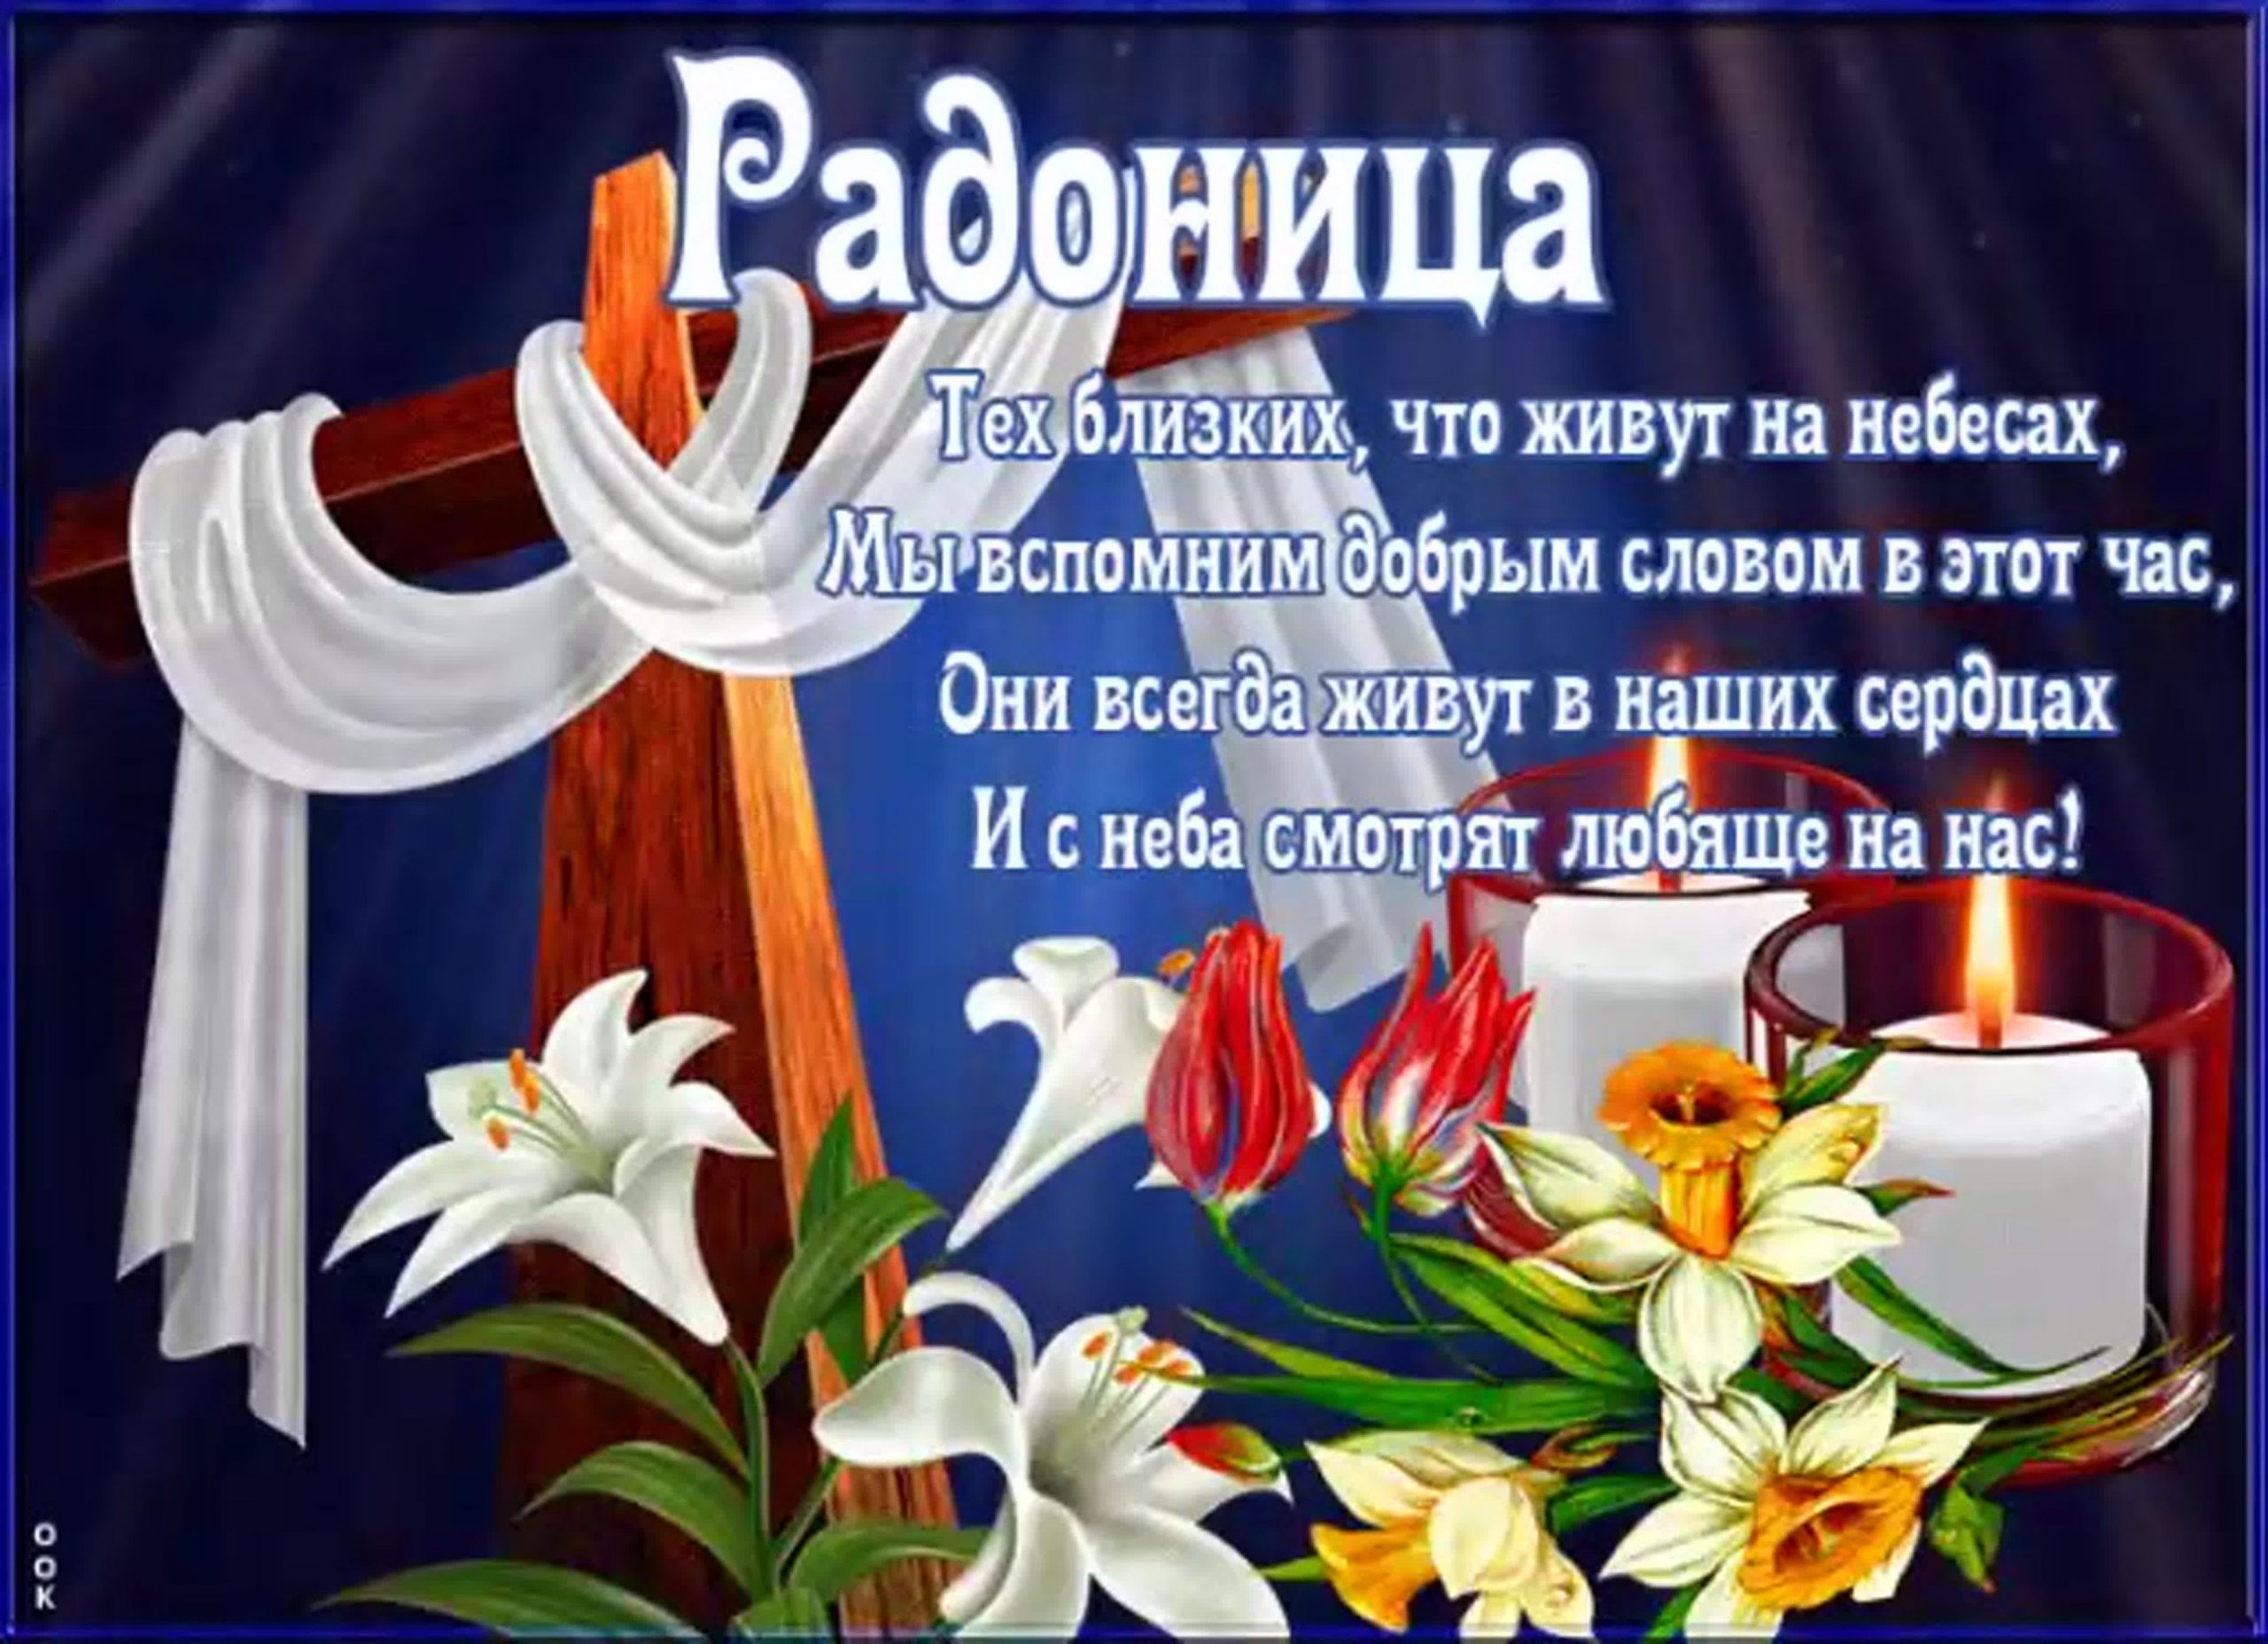 хорошего дня православные пожелания картинки